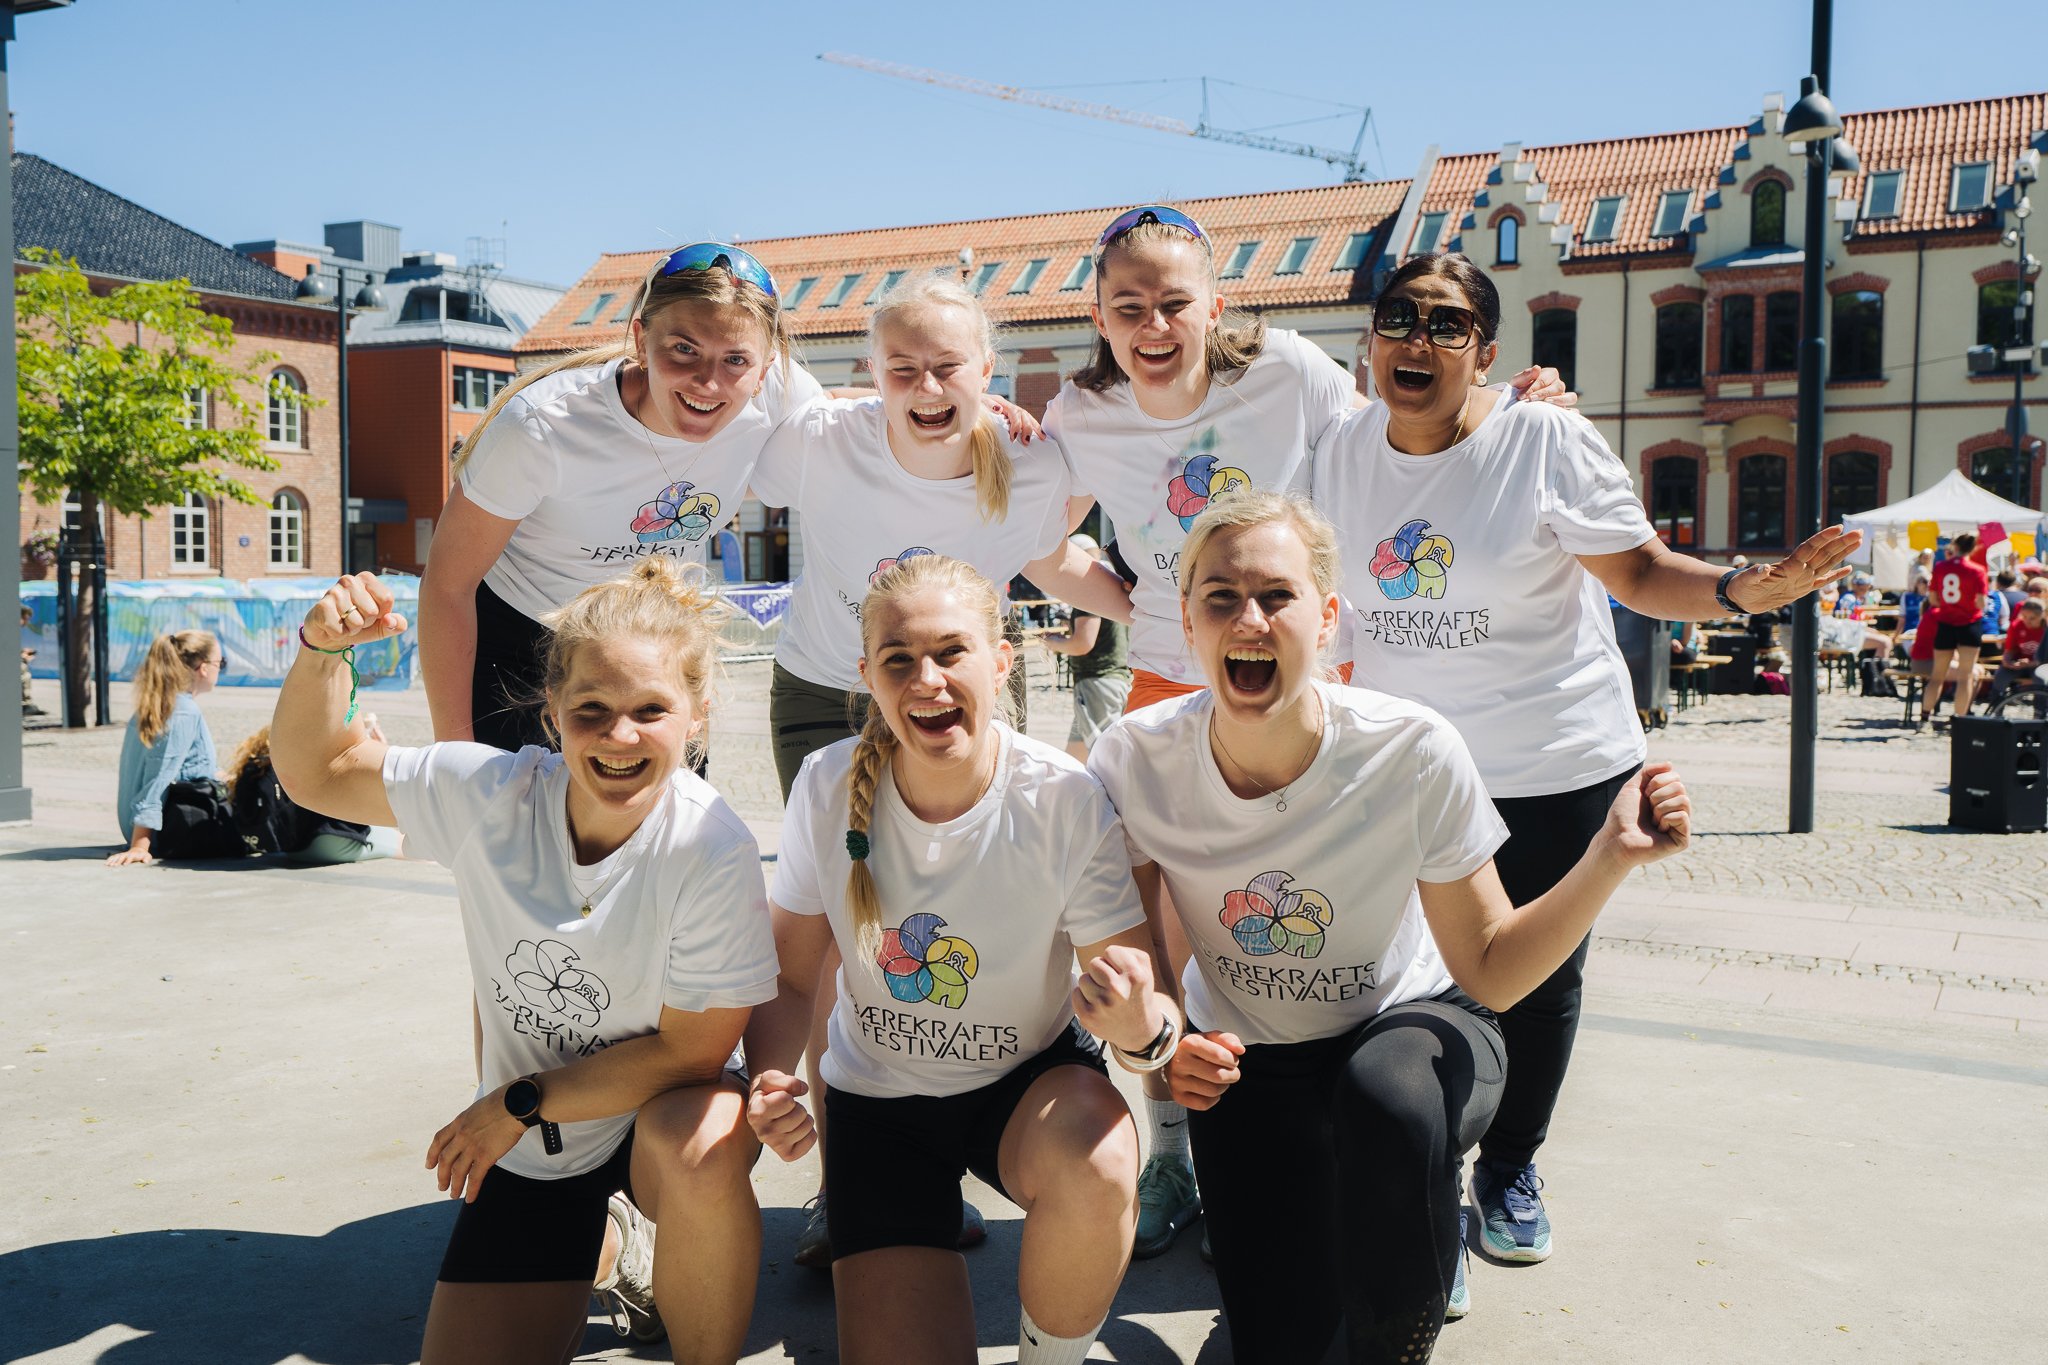 Team Bærekraftsfestivalen - SDG 17